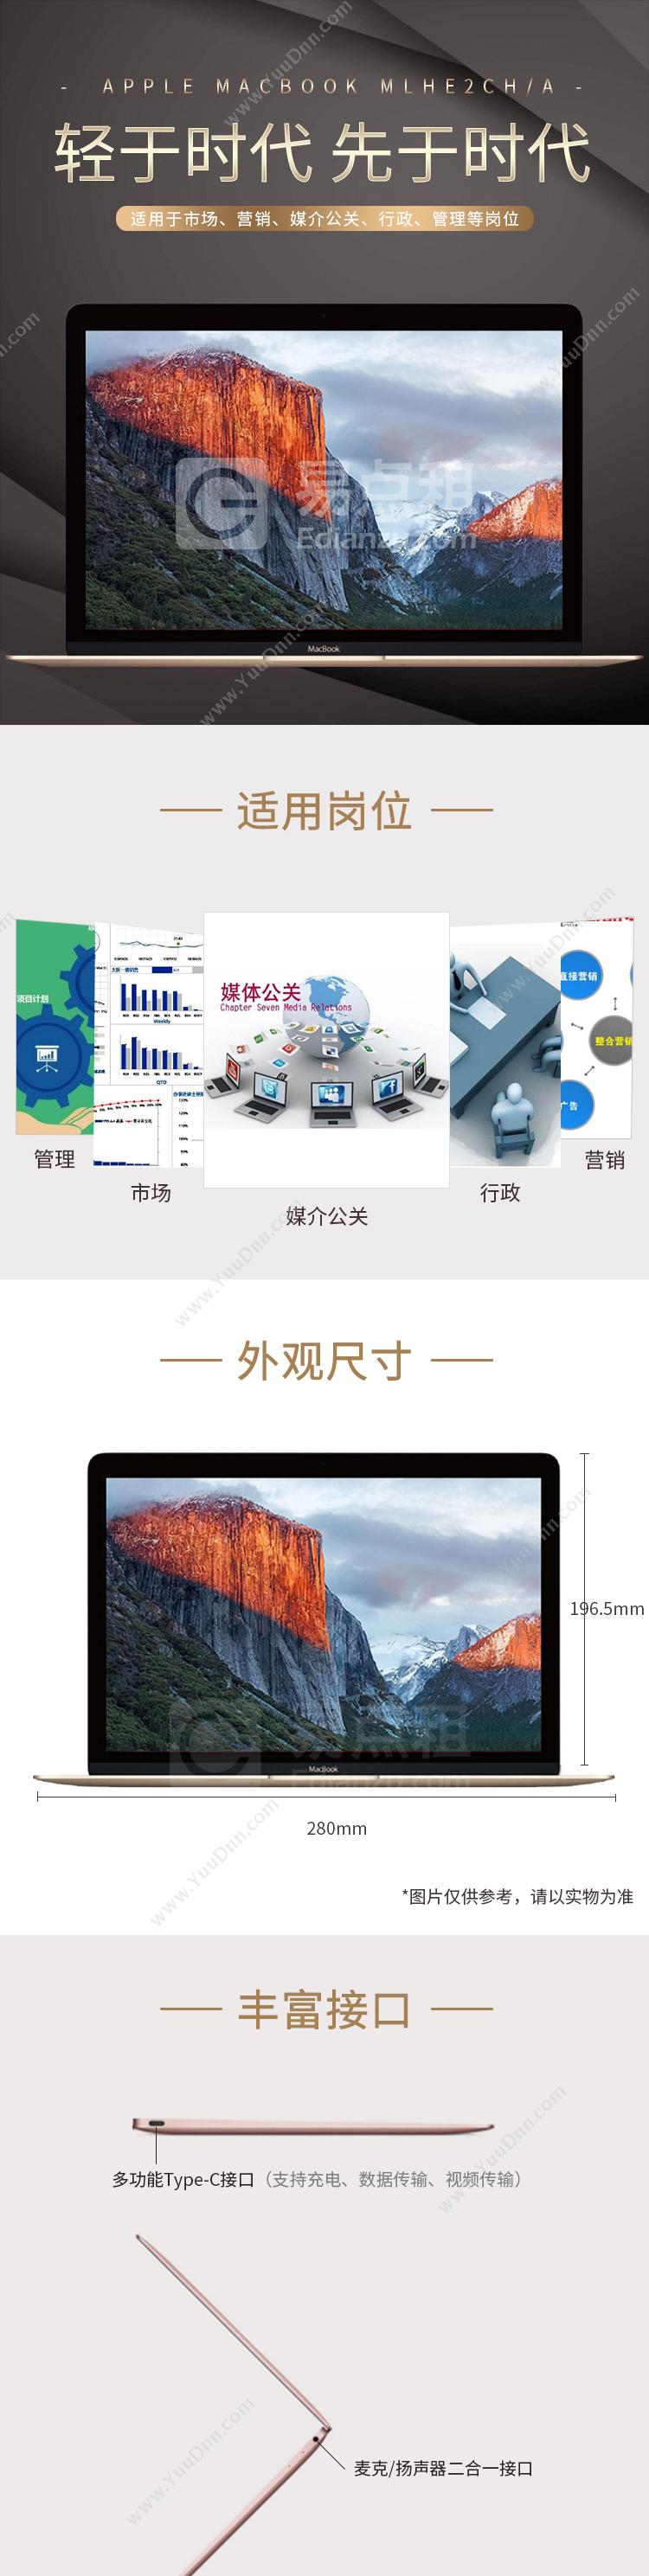 苹果 Apple MacBook 2016MLHE2CH/A 12英寸便携笔记本电脑(CoreM/8GB/256GB SSD/HD515核显/Retina屏)金色 笔记本电脑